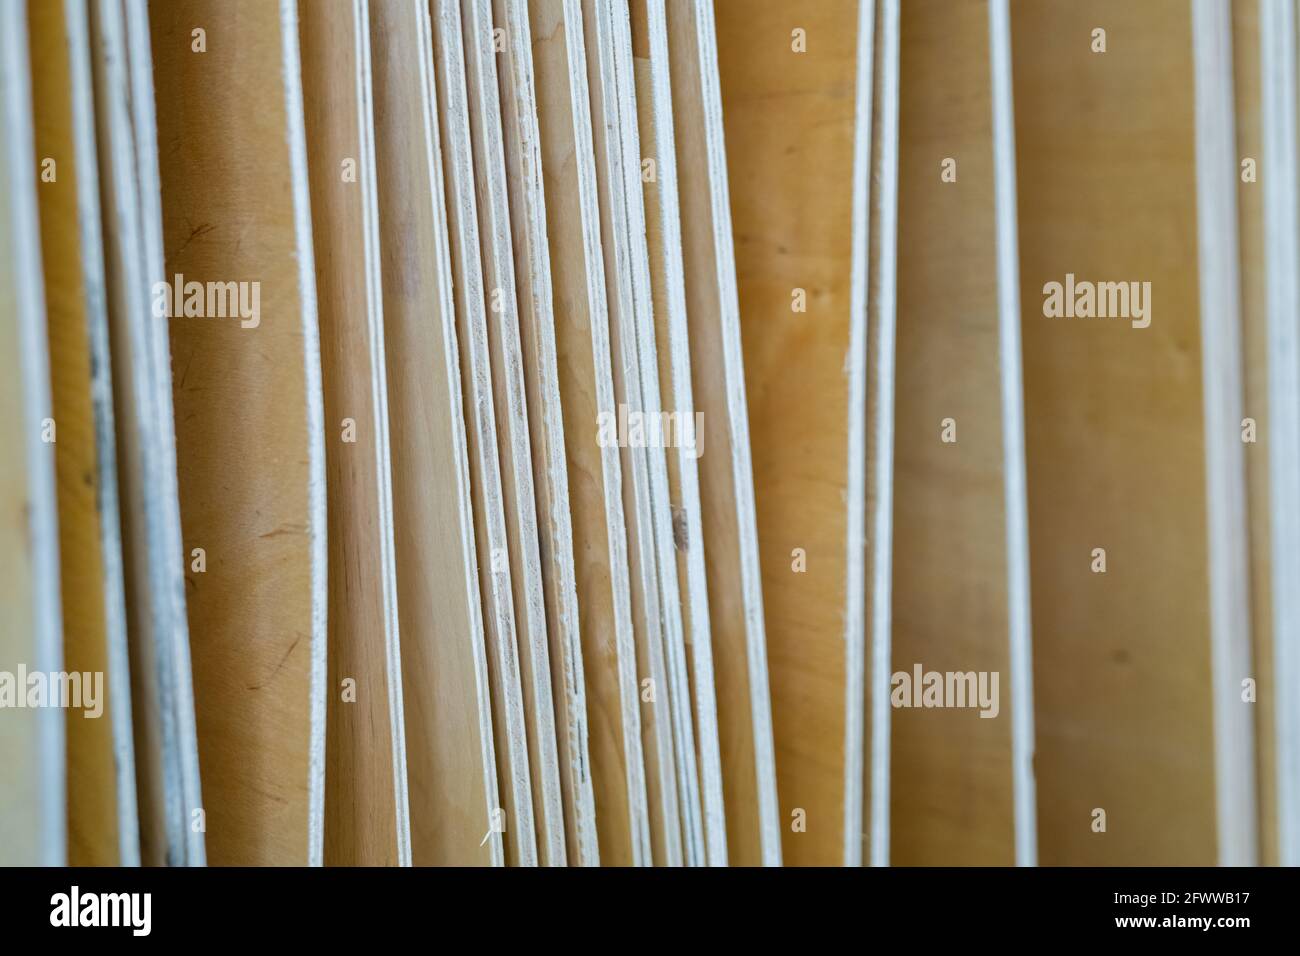 Reihe von Plywoods im zeitgenössischen Baumarkt oder Supermarkt verkauft Stockfoto